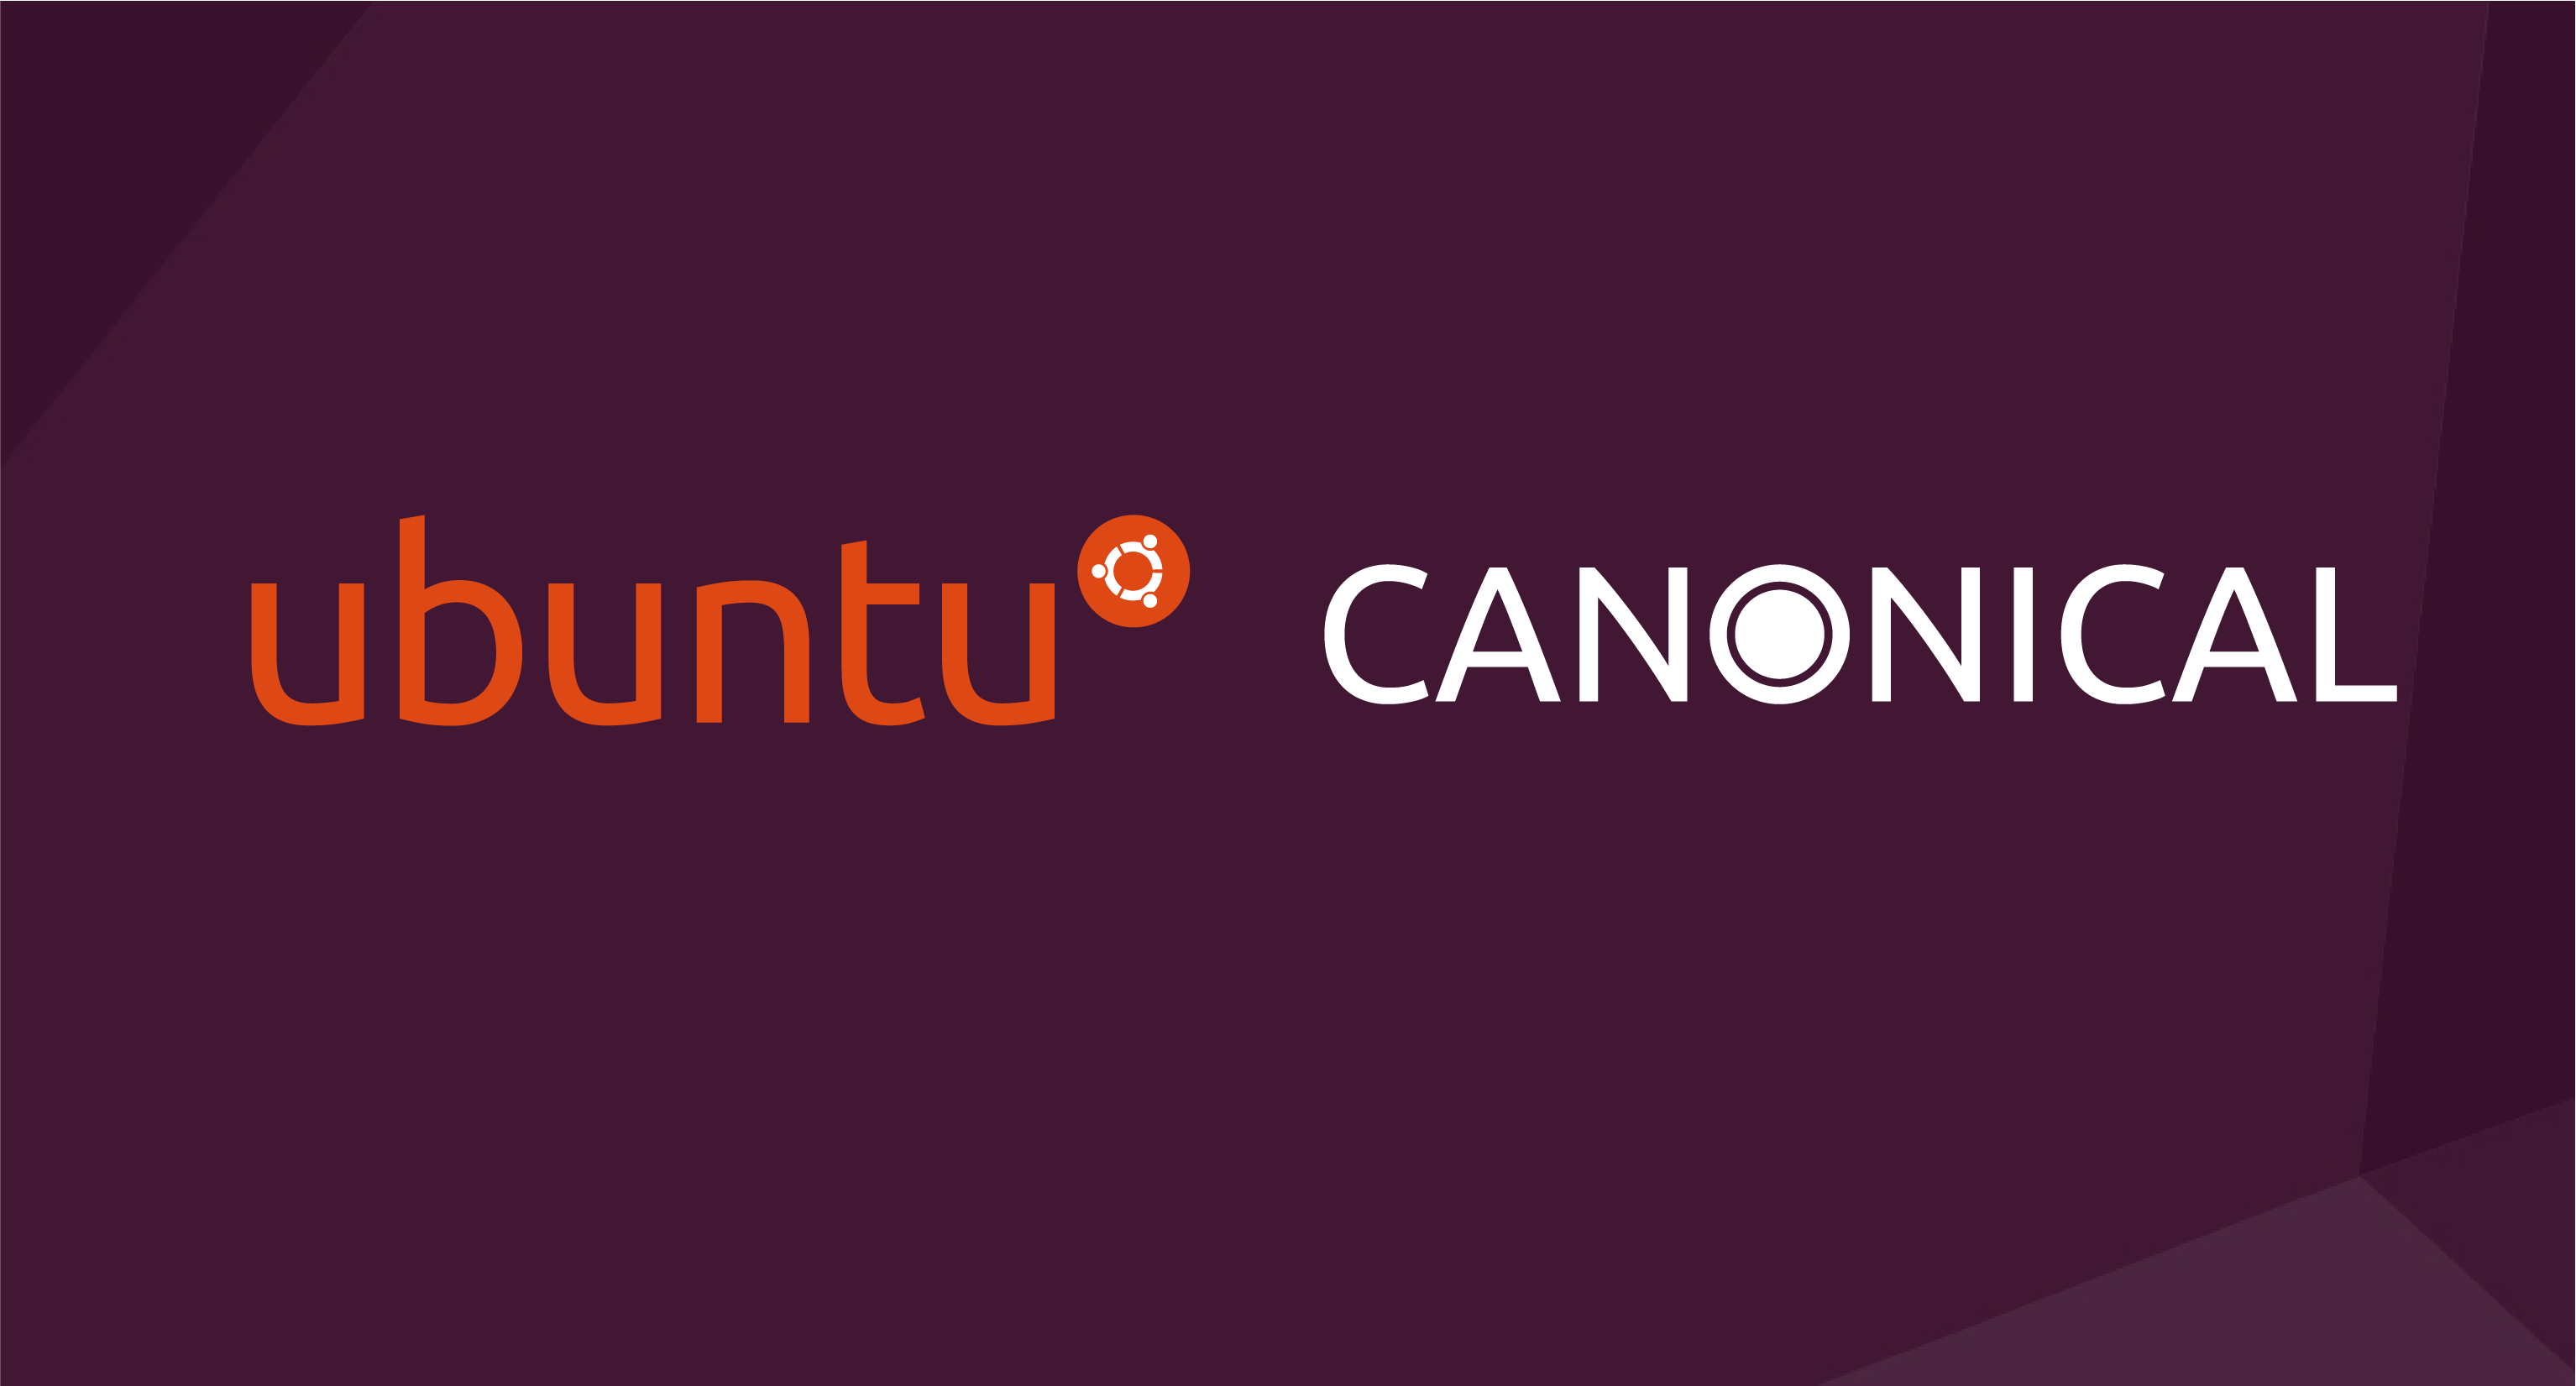 Canonical Ubuntu at embedded world